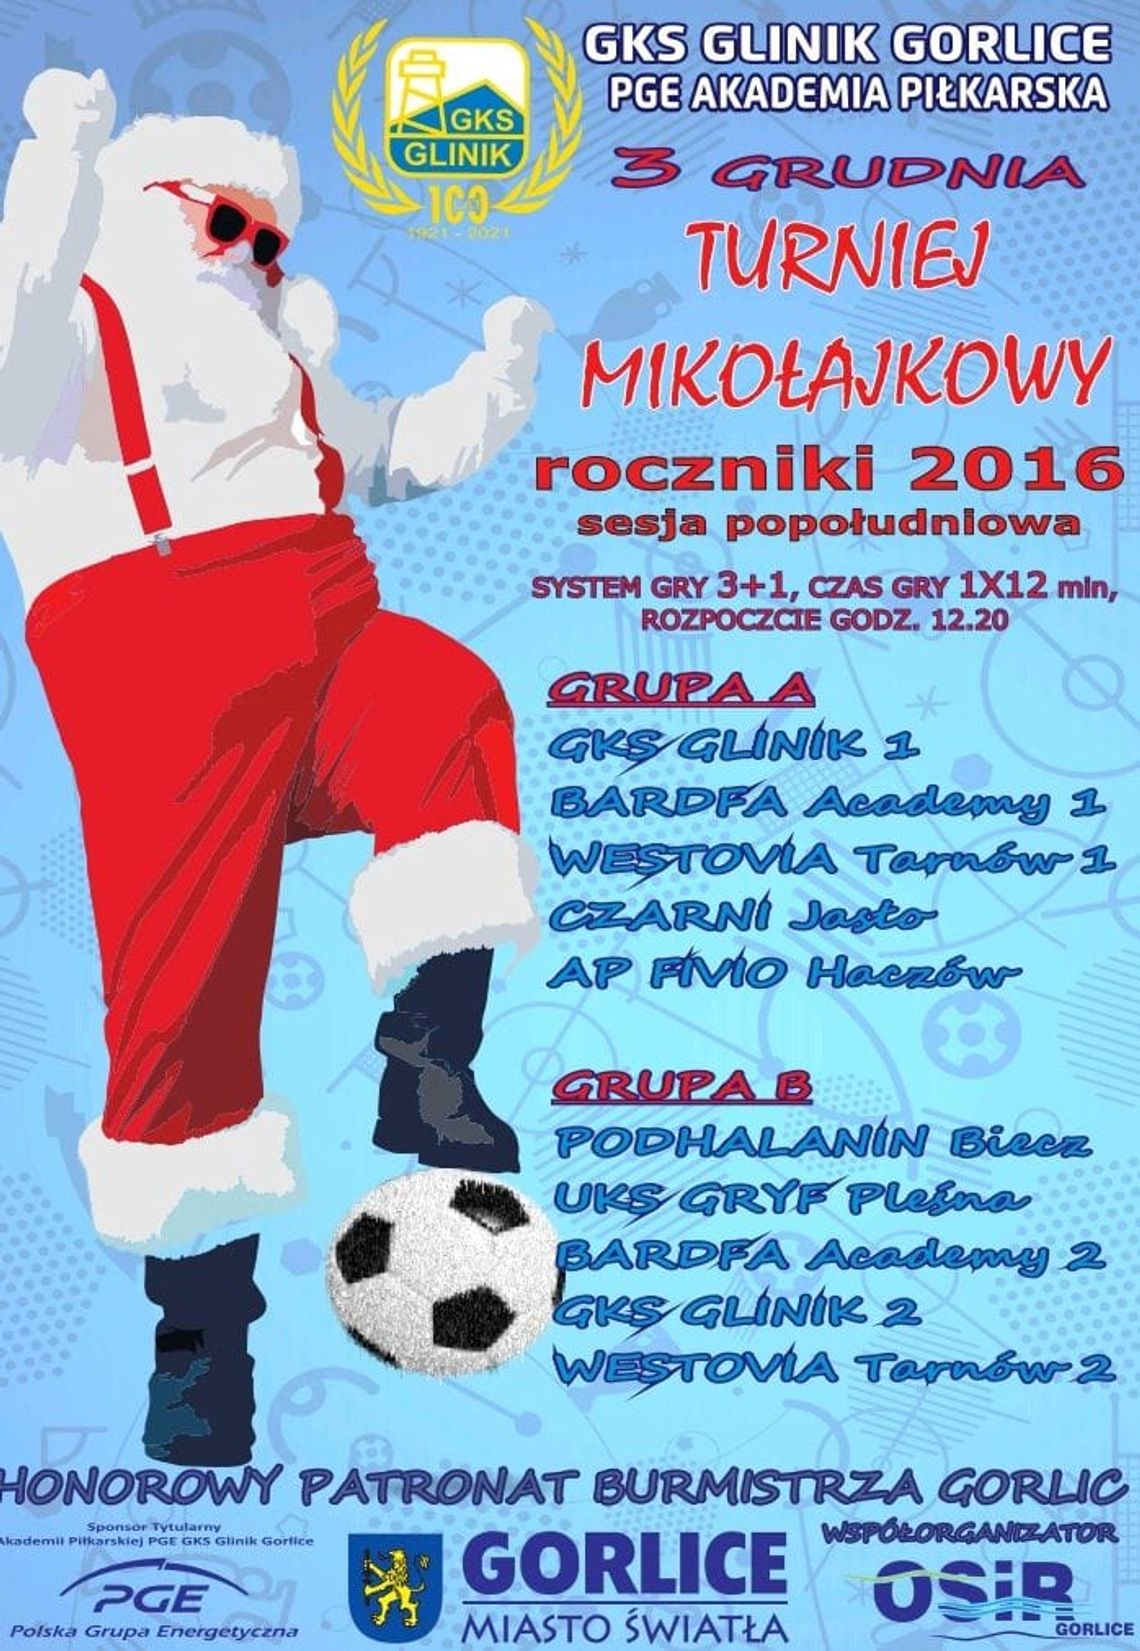 Turniej Mikołajkowy roczniki 2016 | halogorlice.info